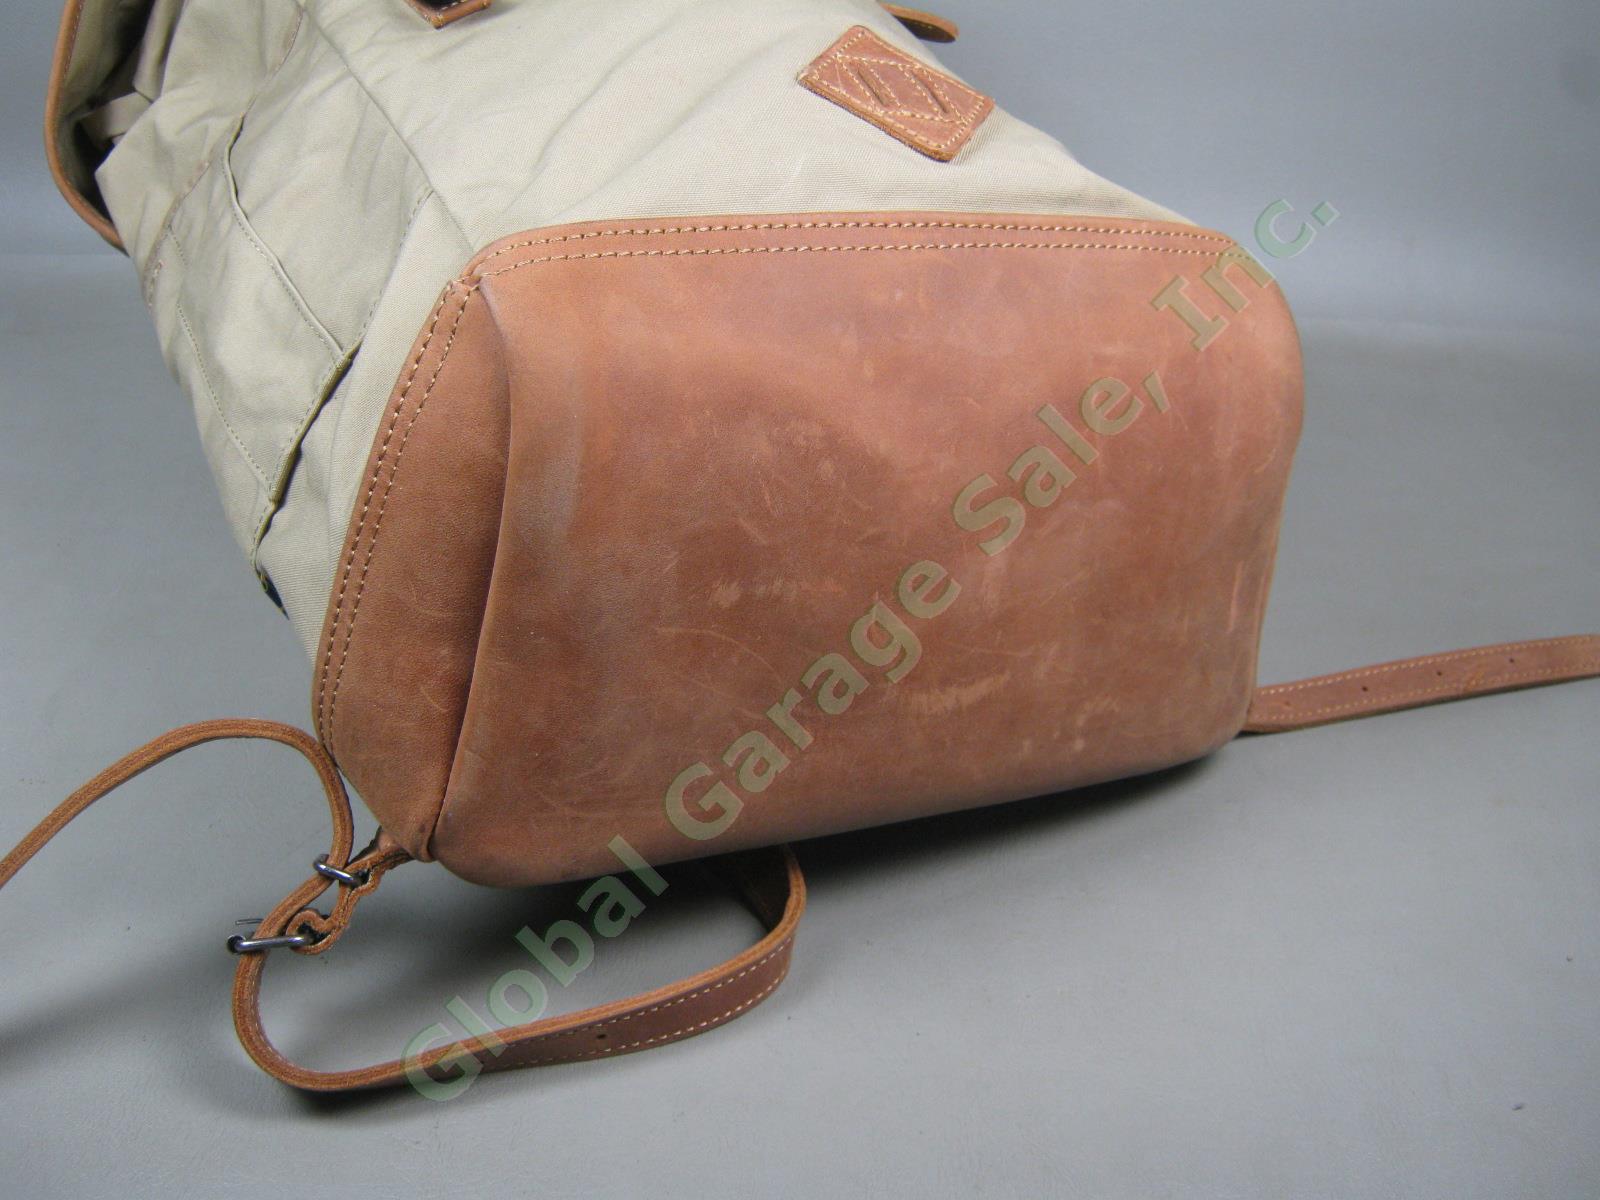 Fjallraven Rucksack No 21 Large Daypack Backpack 24206 Sand Color G-1000 VG COND 6